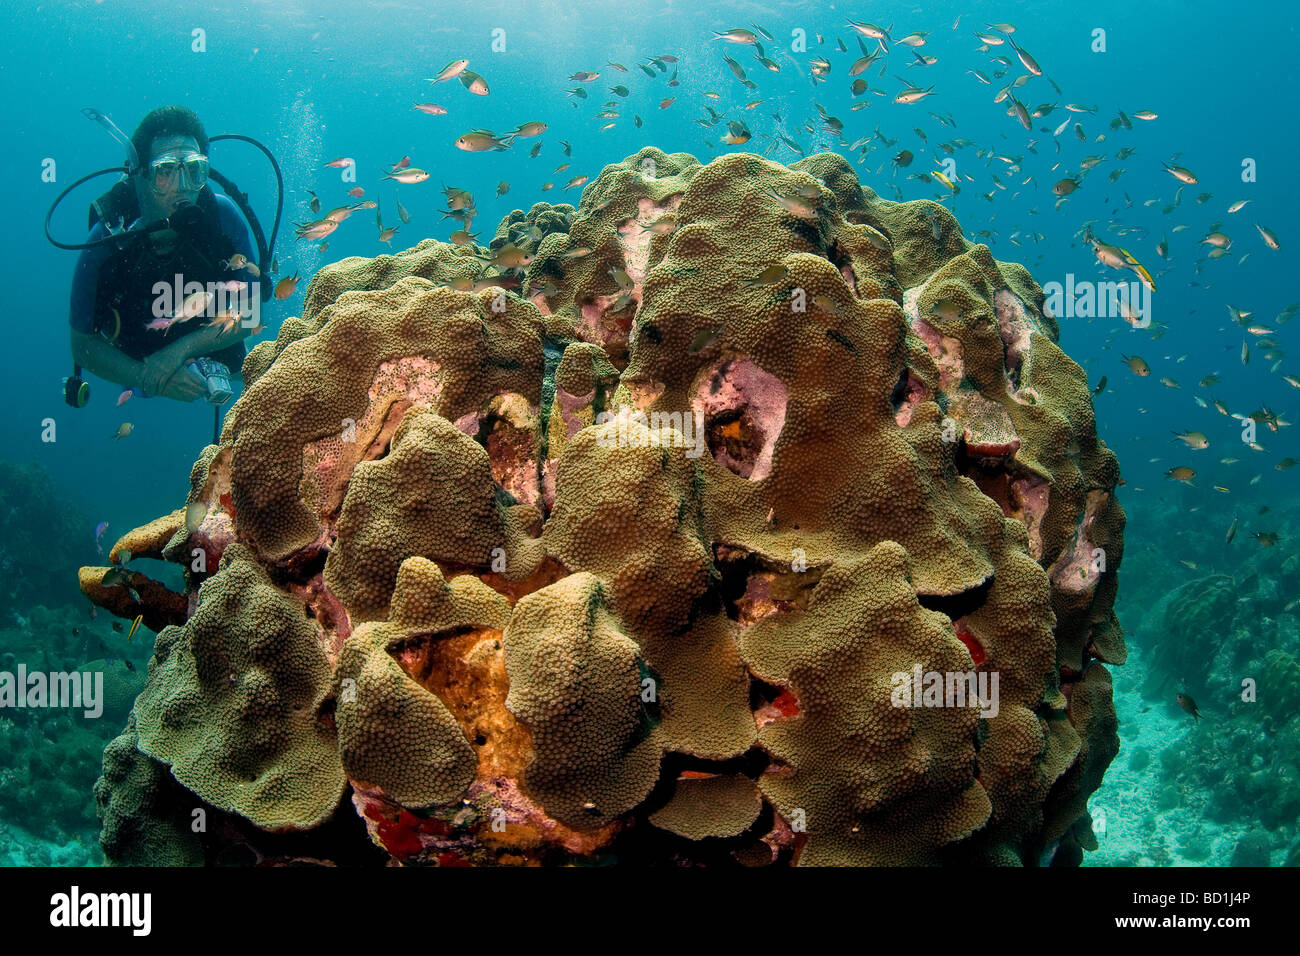 La plongée sur la barrière de corail de Watamula dans l'océan de l'île des Caraïbes Curaçao dans les Antilles néerlandaises Banque D'Images